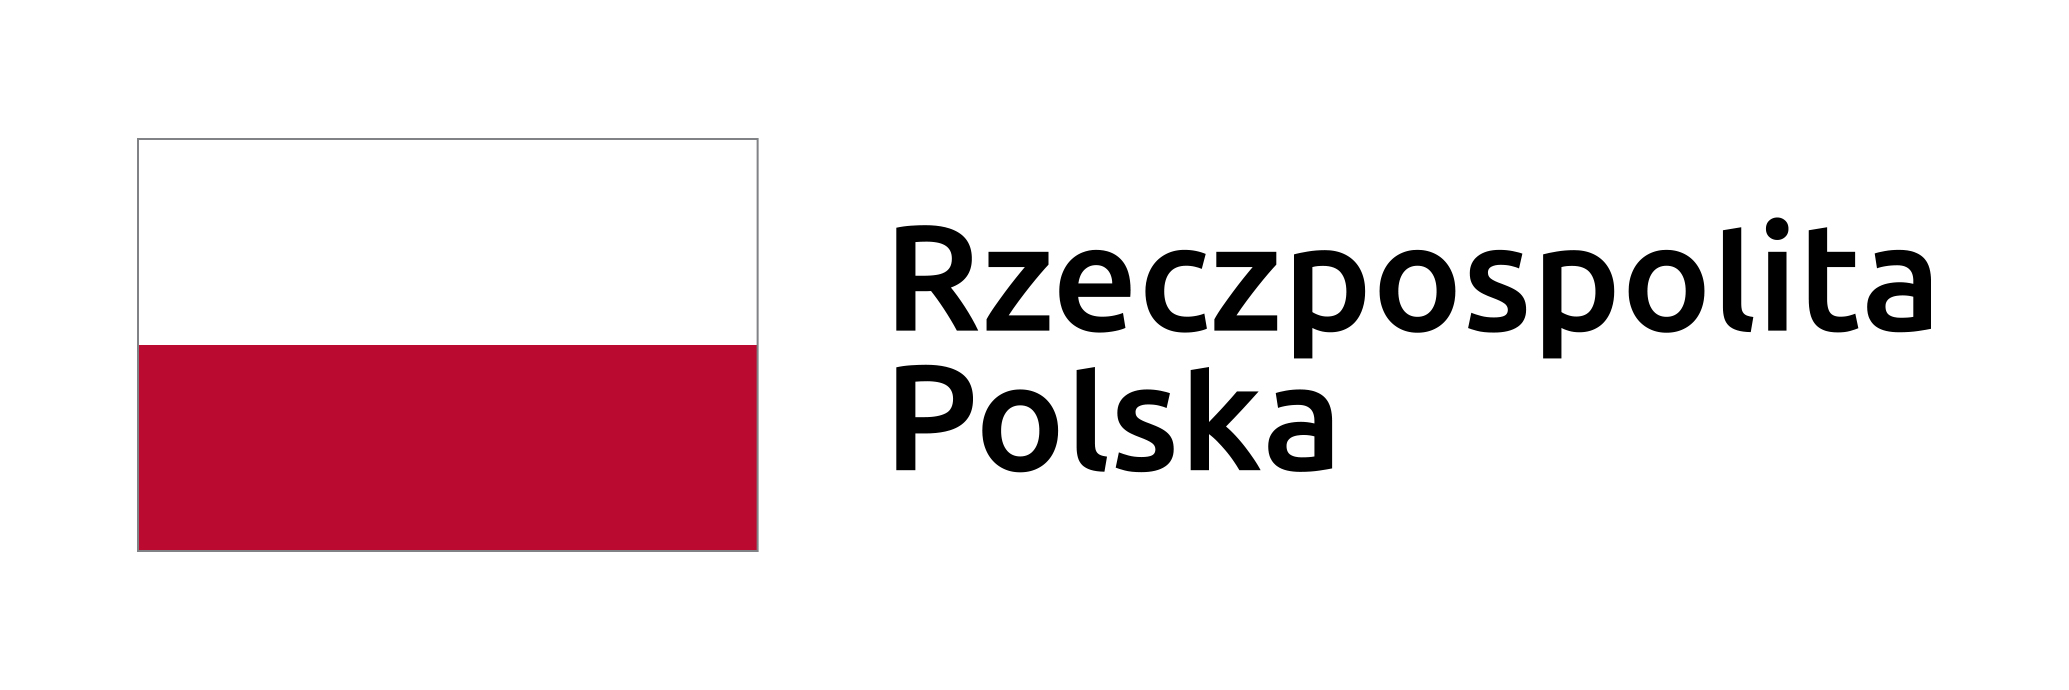 Rzeczypospolita Polska - flaga polski